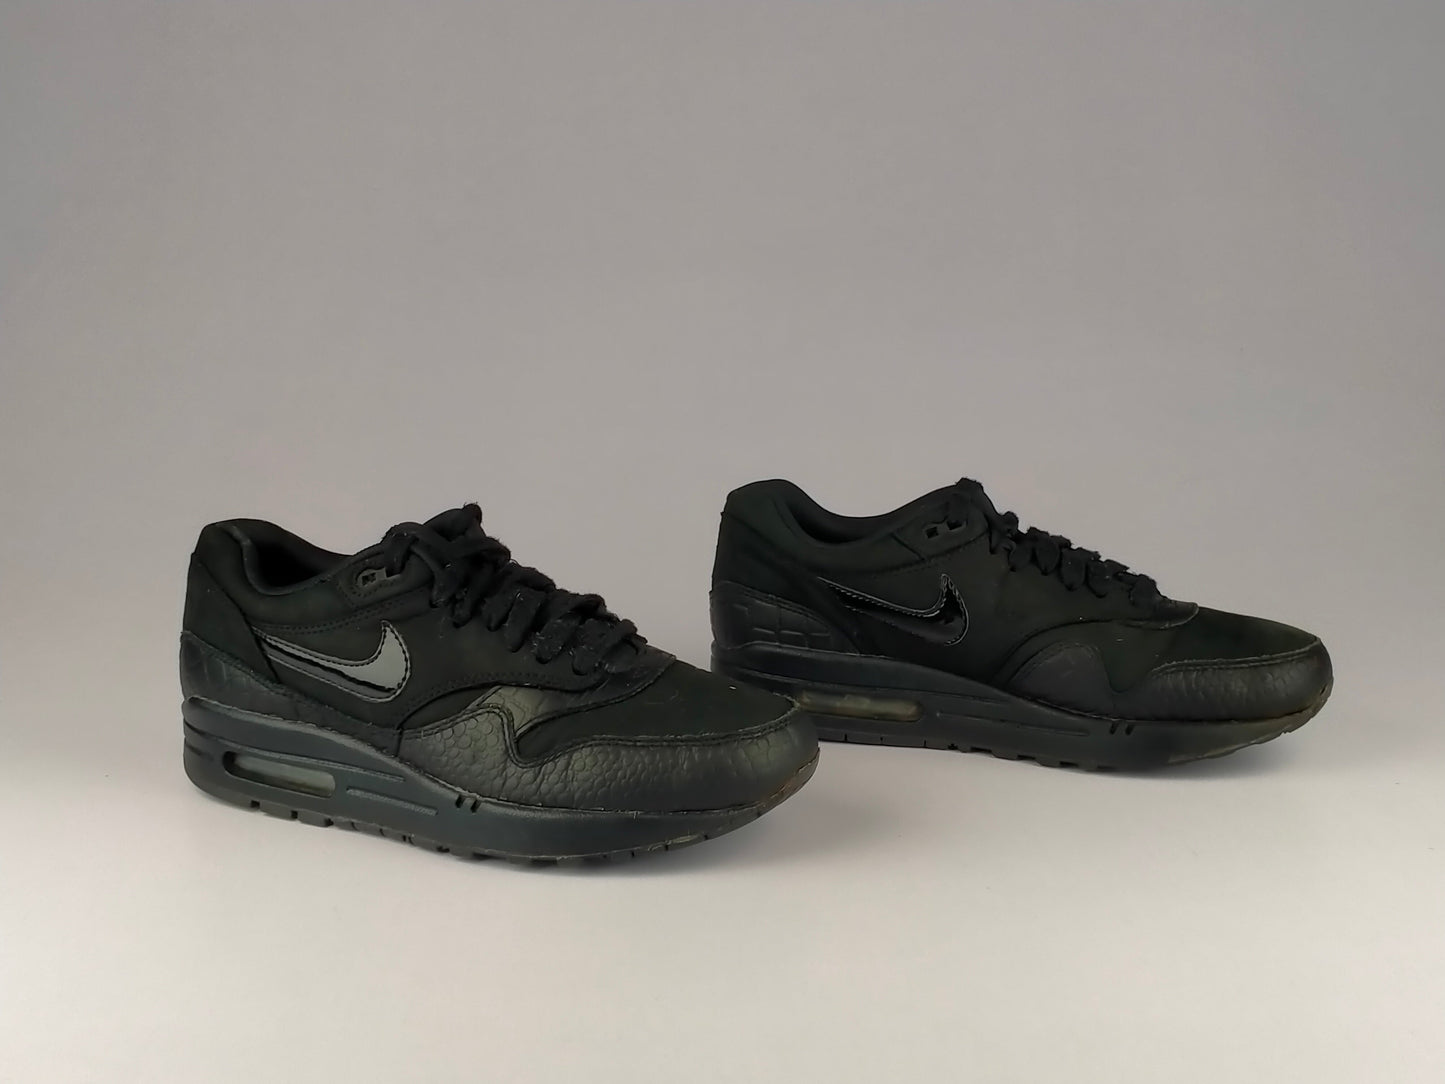 Nike Wmns Air Max 1 Premium 'Black/Metallic Silver/Volt' 454746-004